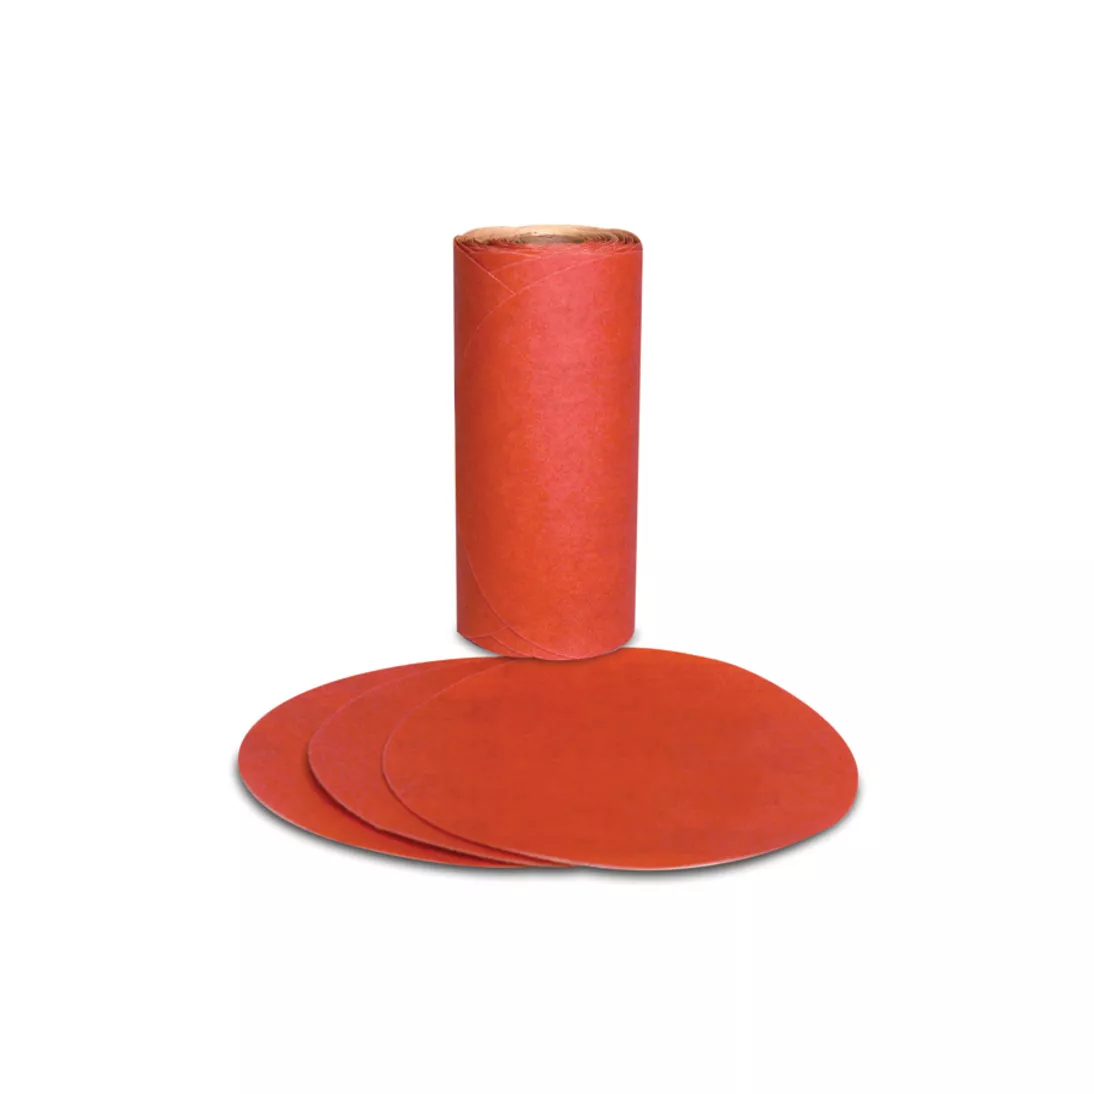 3M™ Red Abrasive PSA Disc, 01605, 5 in, P220, 100 discs per roll, 6
rolls per case